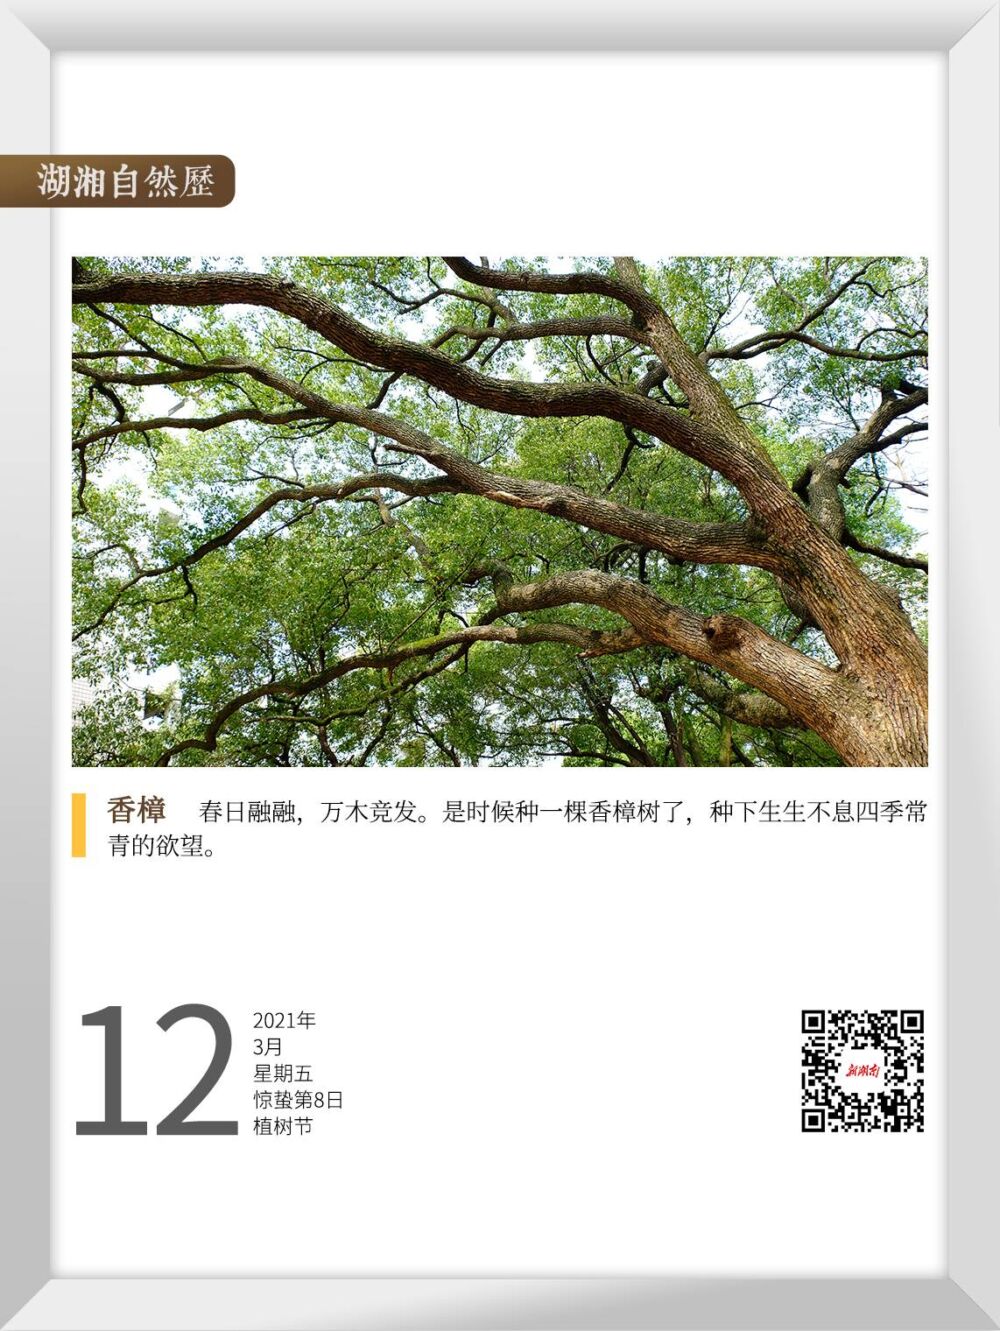 湖湘自然历丨在春天，种一棵树①香樟